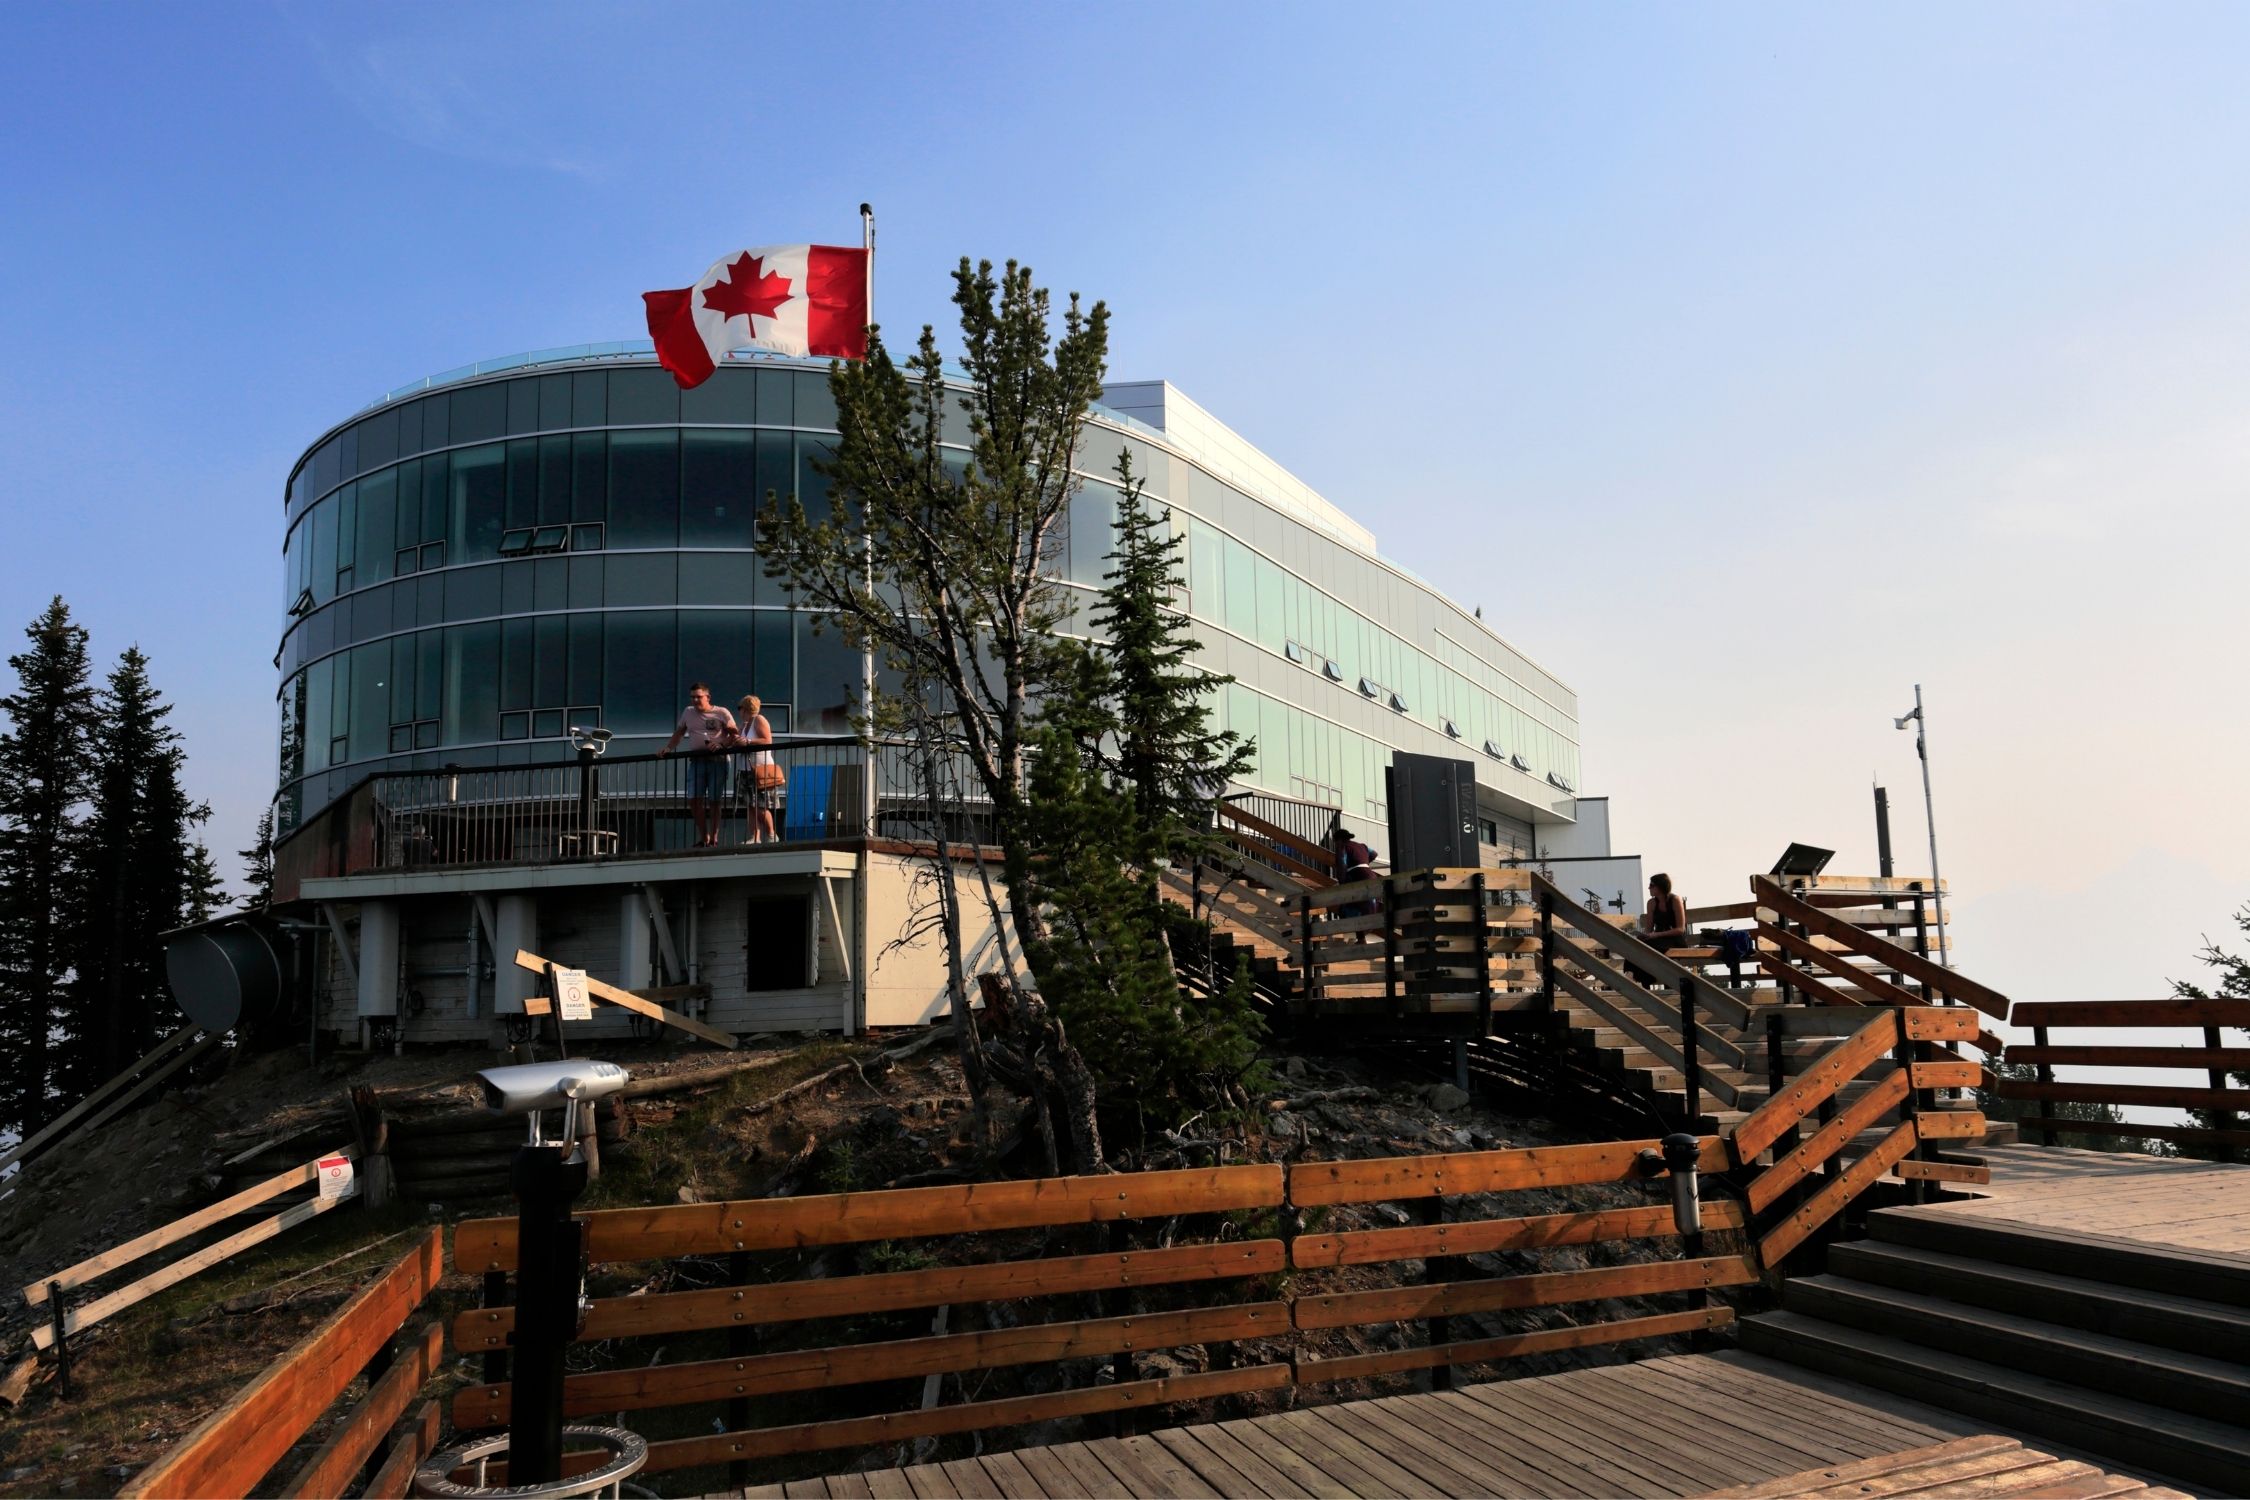 Banff Gondola Center in the summer